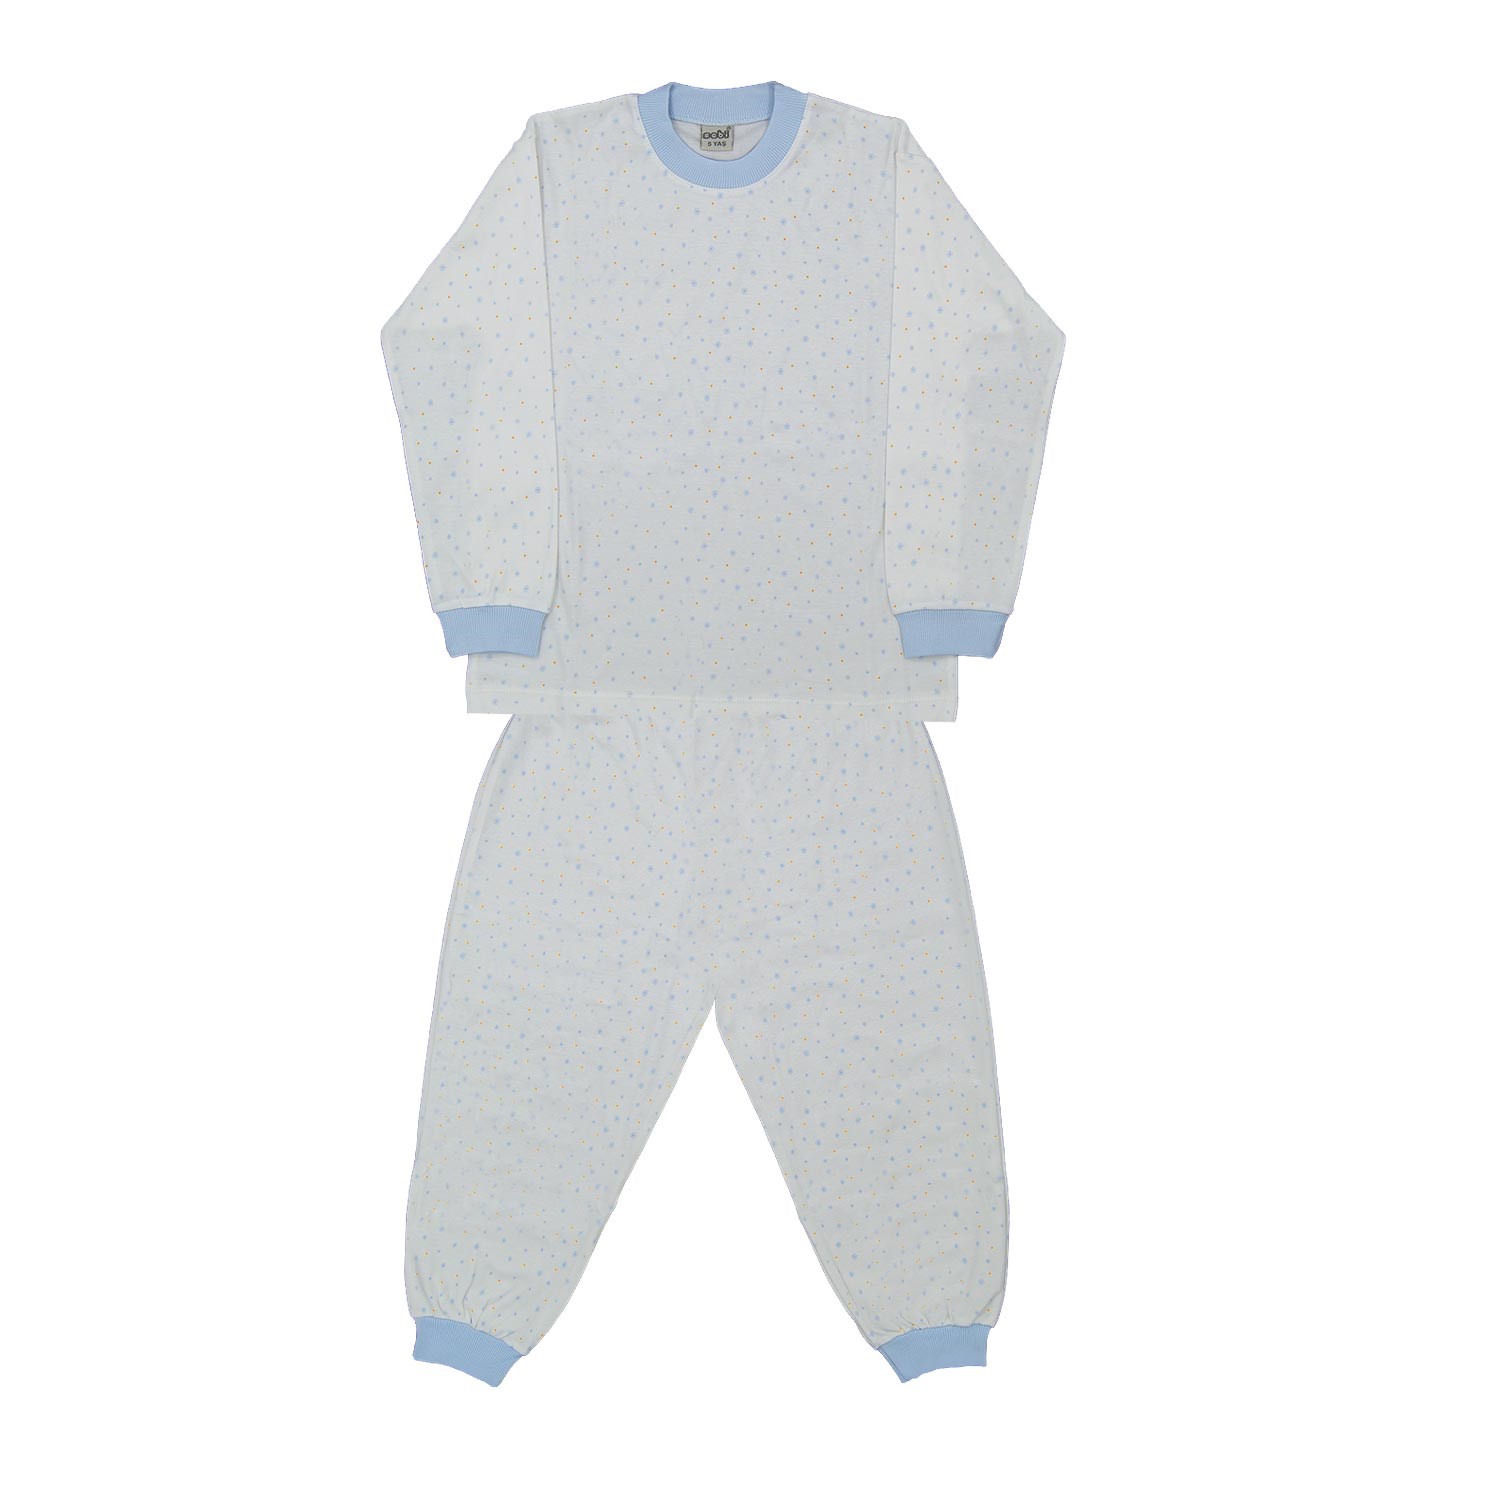 Sebi Bebe 52230 Yıldızlı Çocuk Pijama Takımı Krem-Mavi